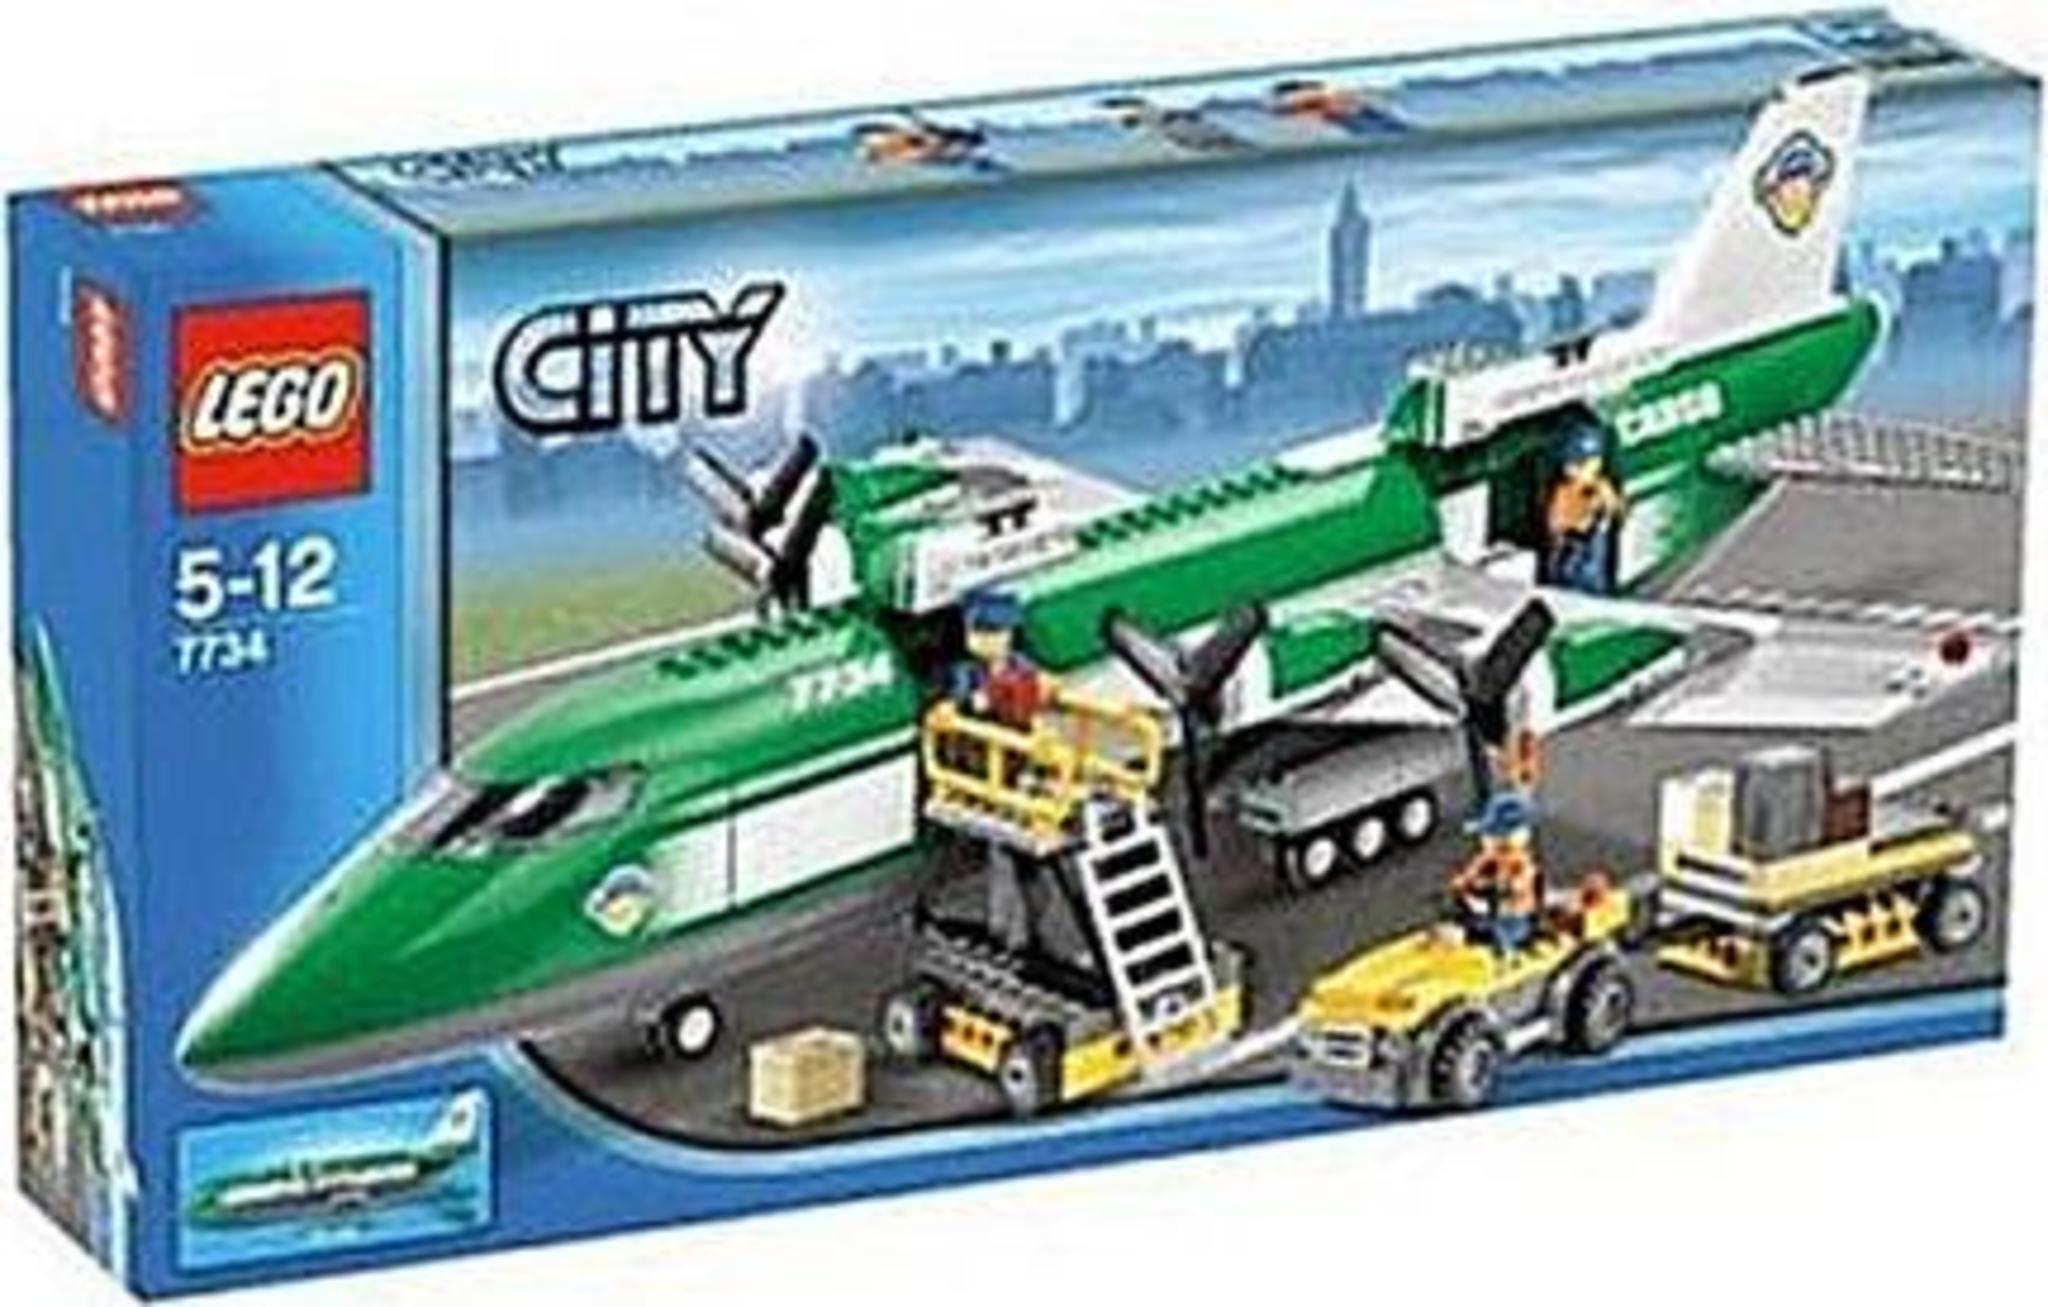 LEGO City 7734 - Aereo Cargo